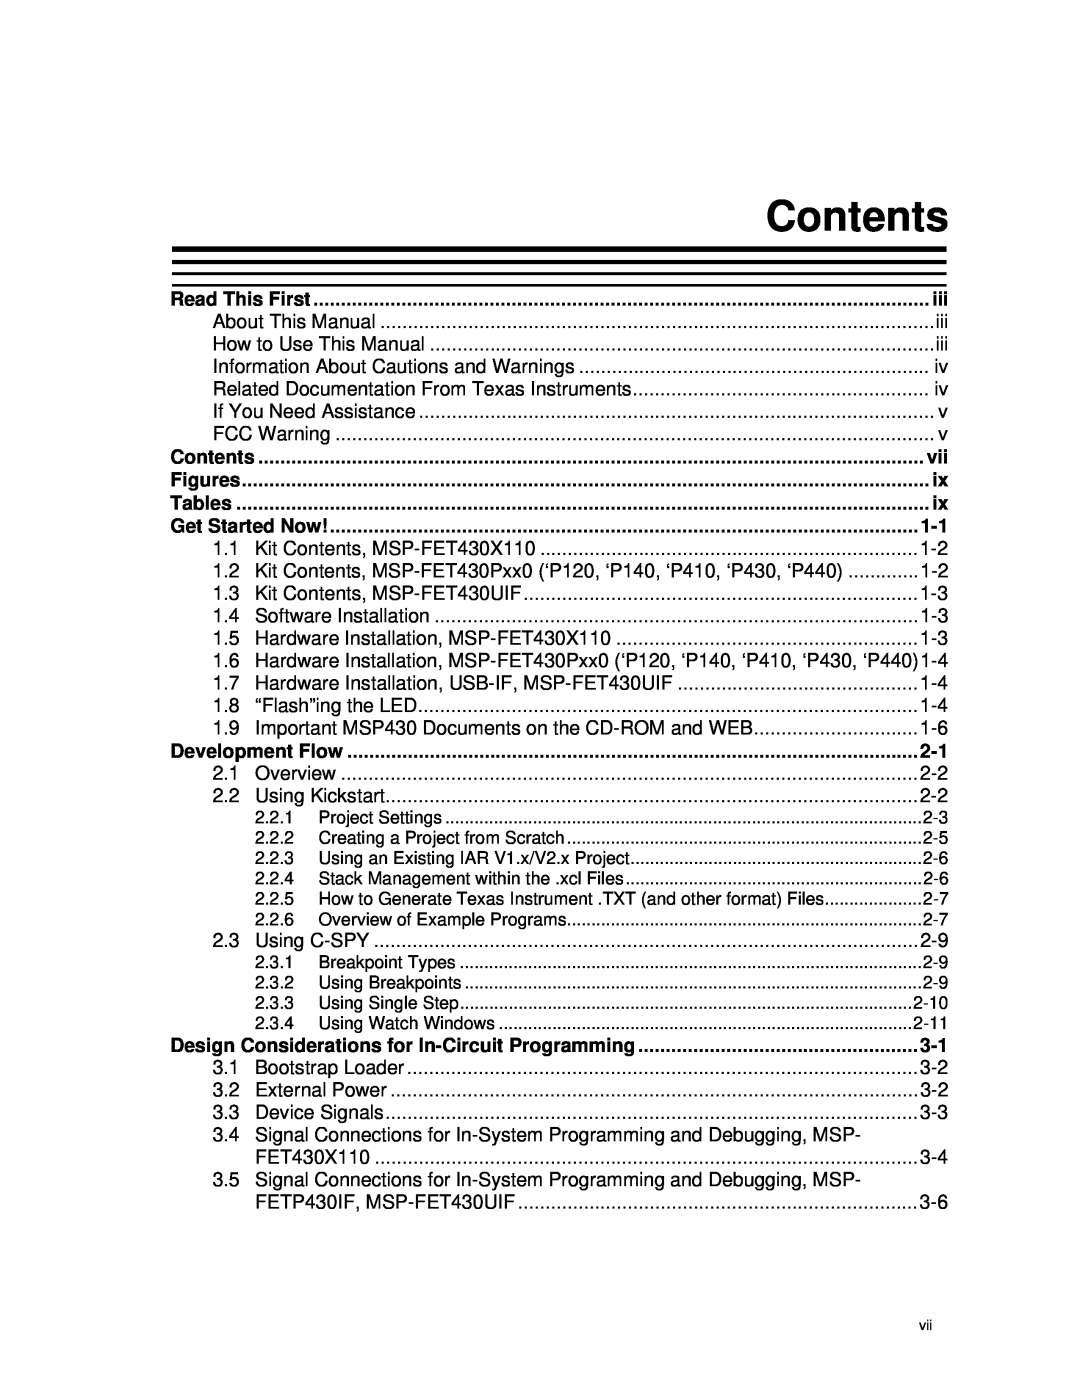 Texas Instruments MSP-FET430 manual Contents 